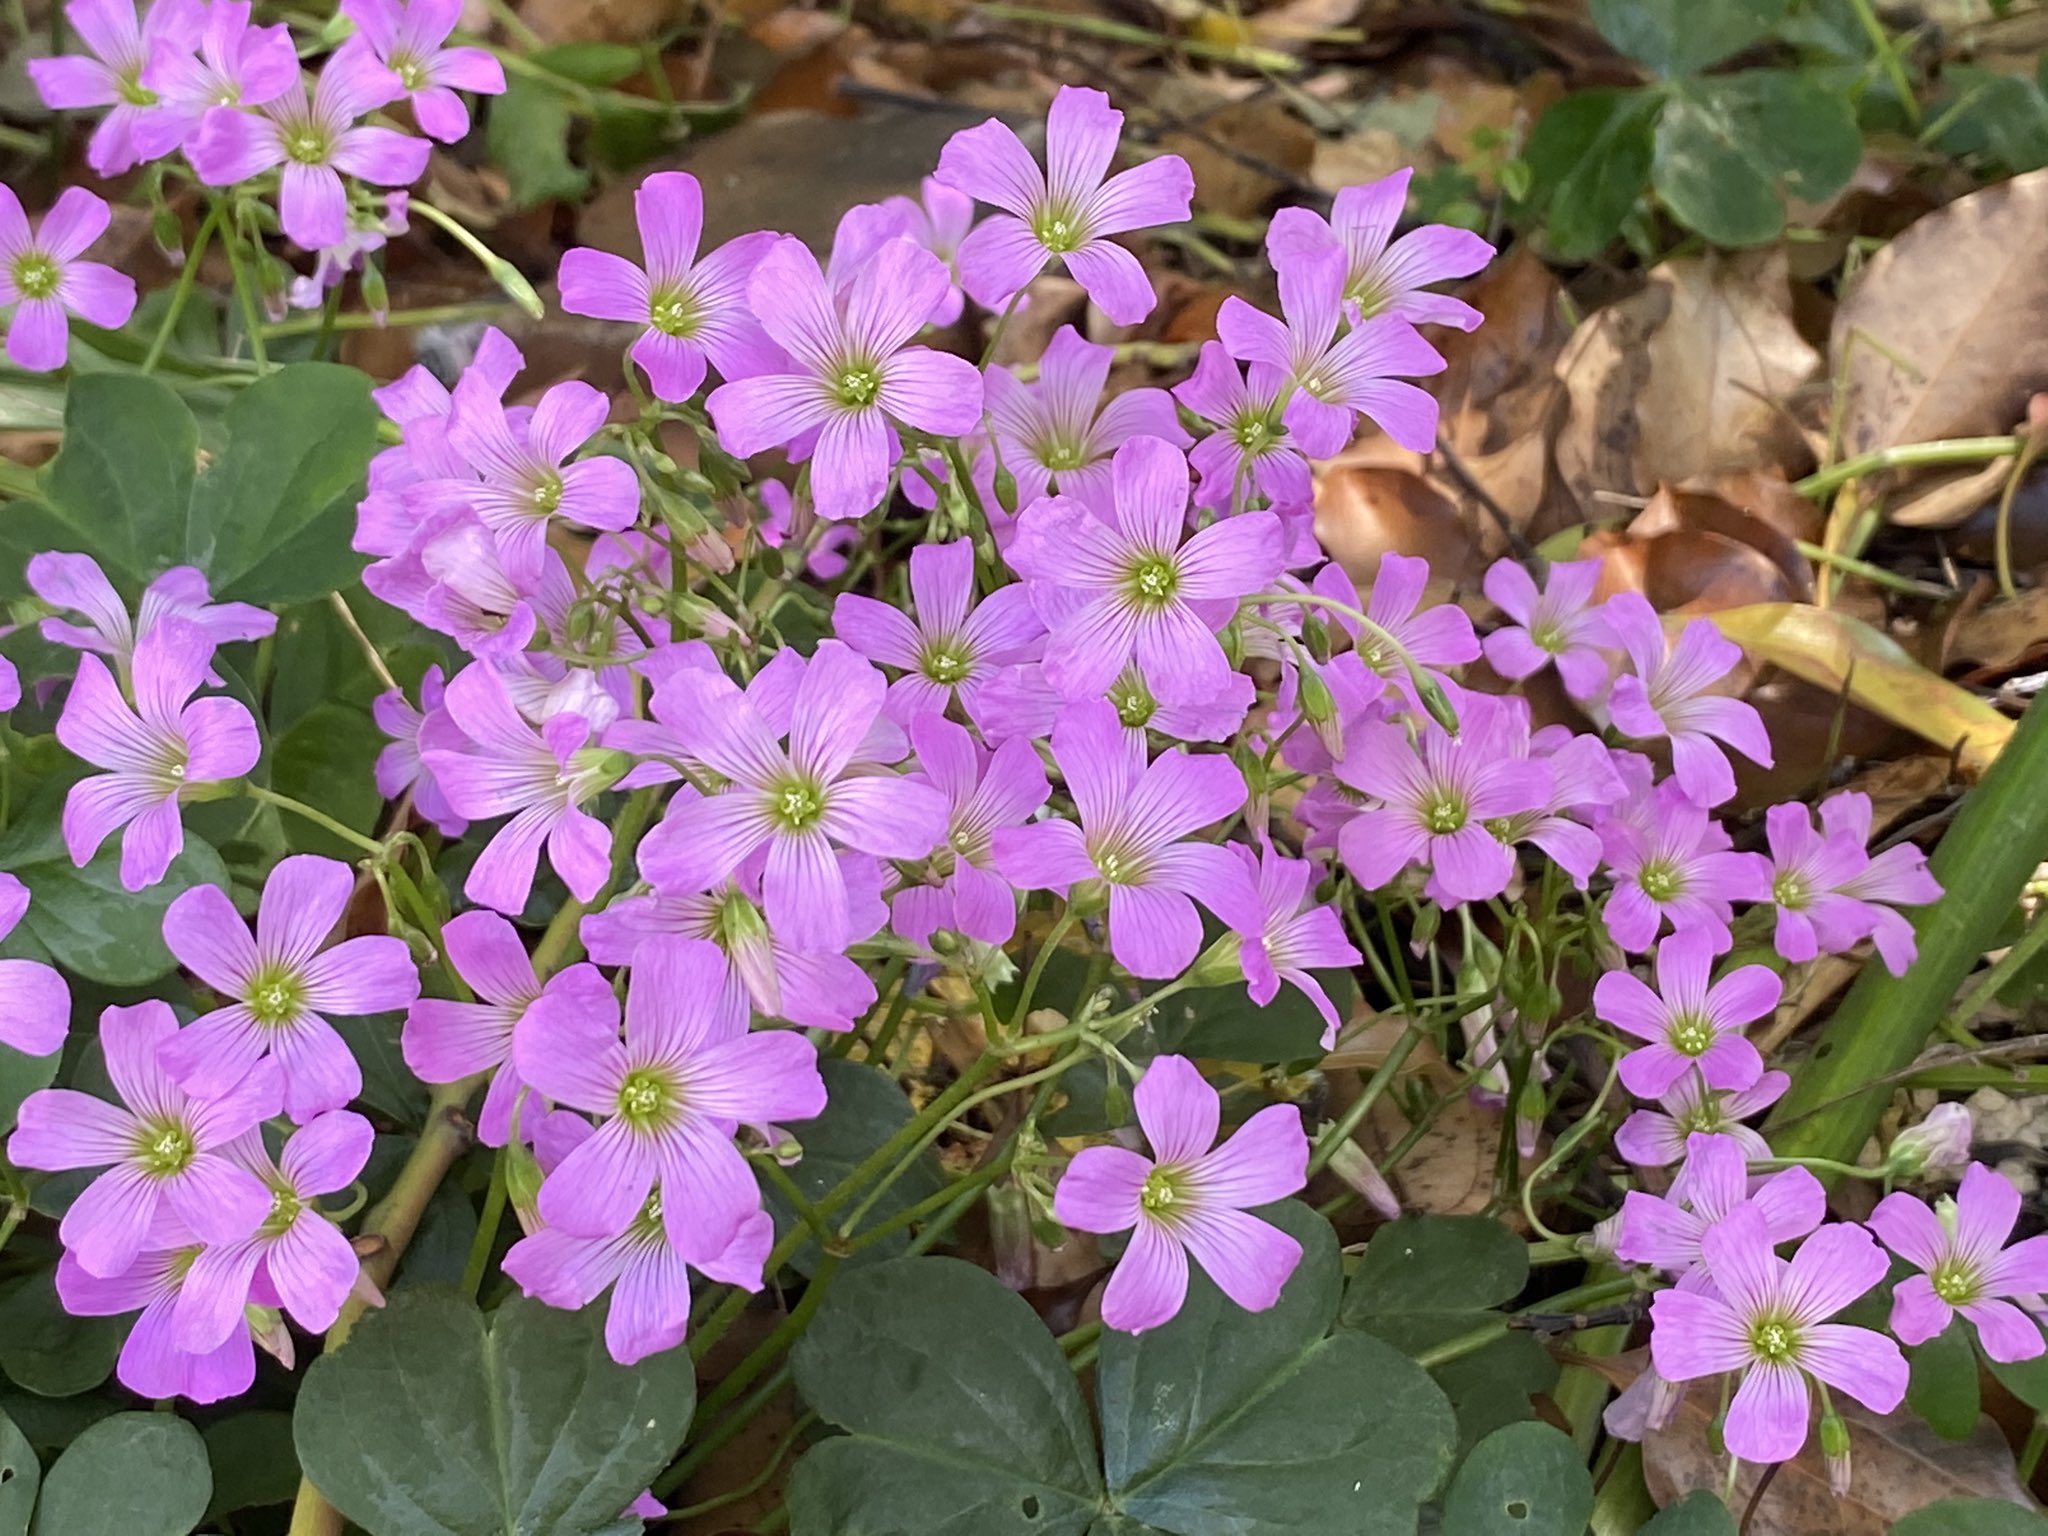 ポラリス 良く似ている葉っぱ だけど花の形は全然違います ピンクのはカタバミ 白いのはシロツメクサ クローバー 近所の公園で撮影 Iphone11 カタバミ シロツメクサ T Co 0mlvhg0jsm Twitter